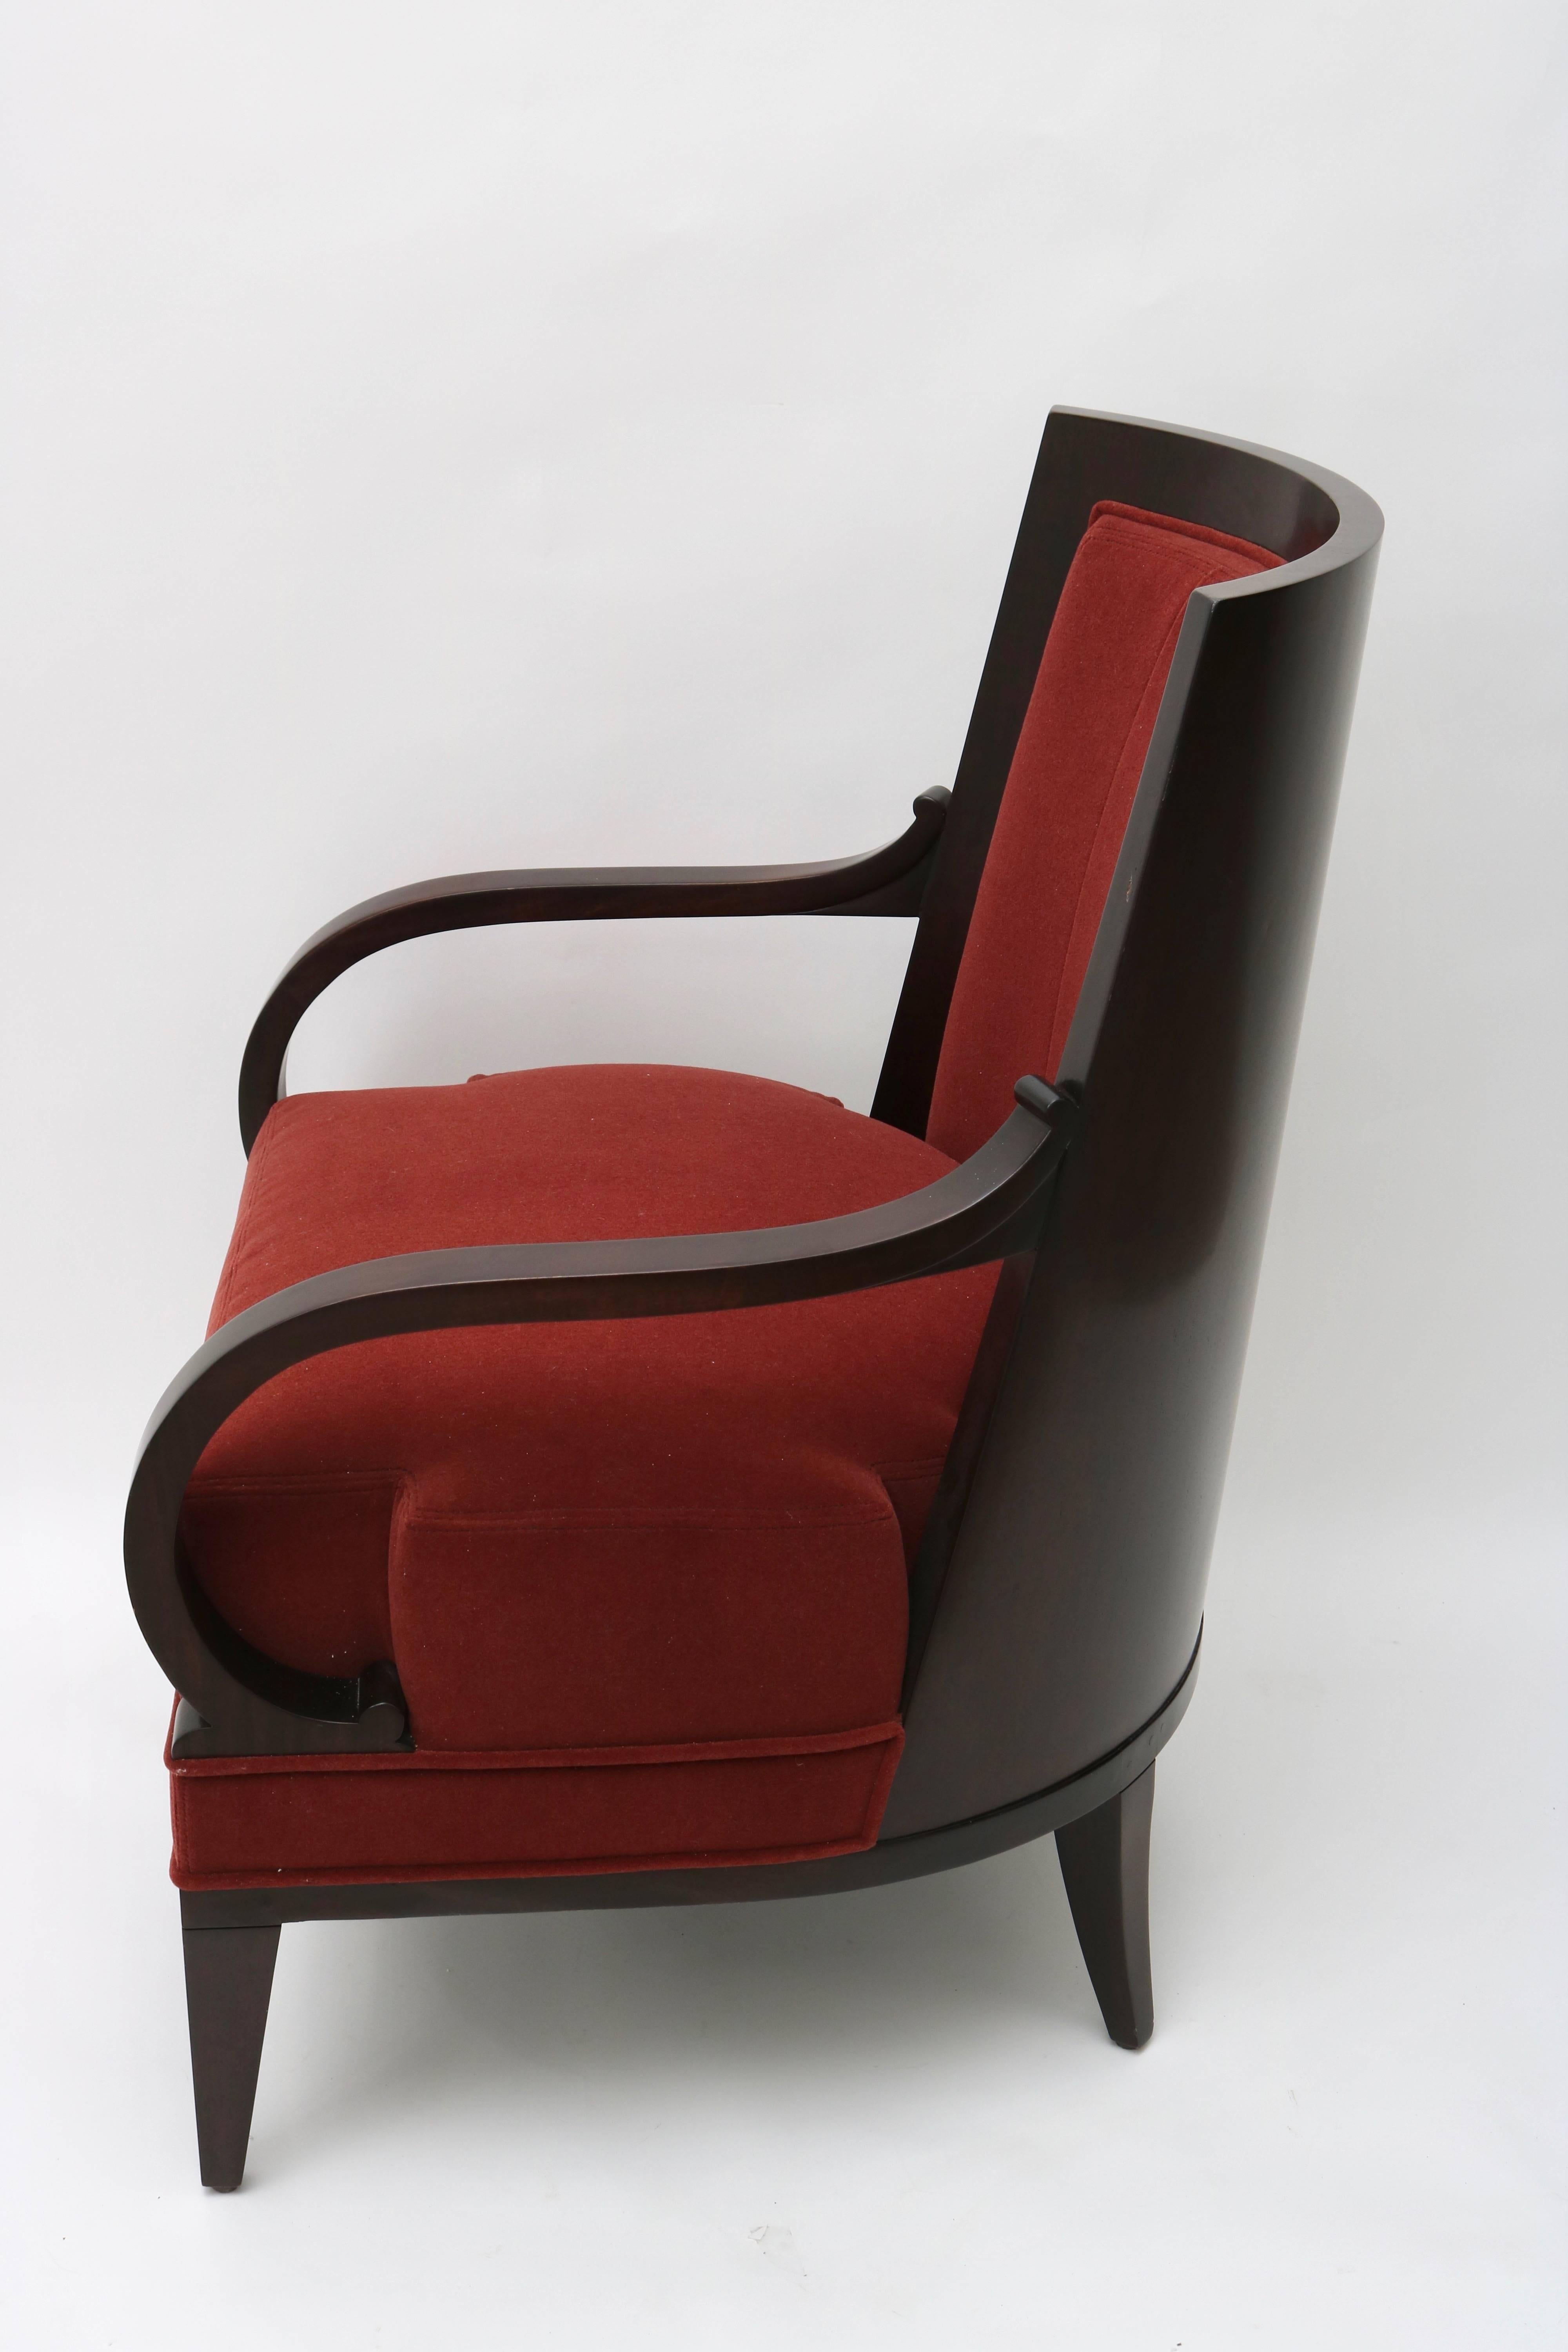 Ce fauteuil élégant a été conçu par Lucien Rollin et vendu par le showroom William Switzer. La pièce emprunte ses lignes à la période Biedermeier russe, avec son dossier incurvé et ses bras serpentins. 

Remarque : Le tissu est une texture mohair